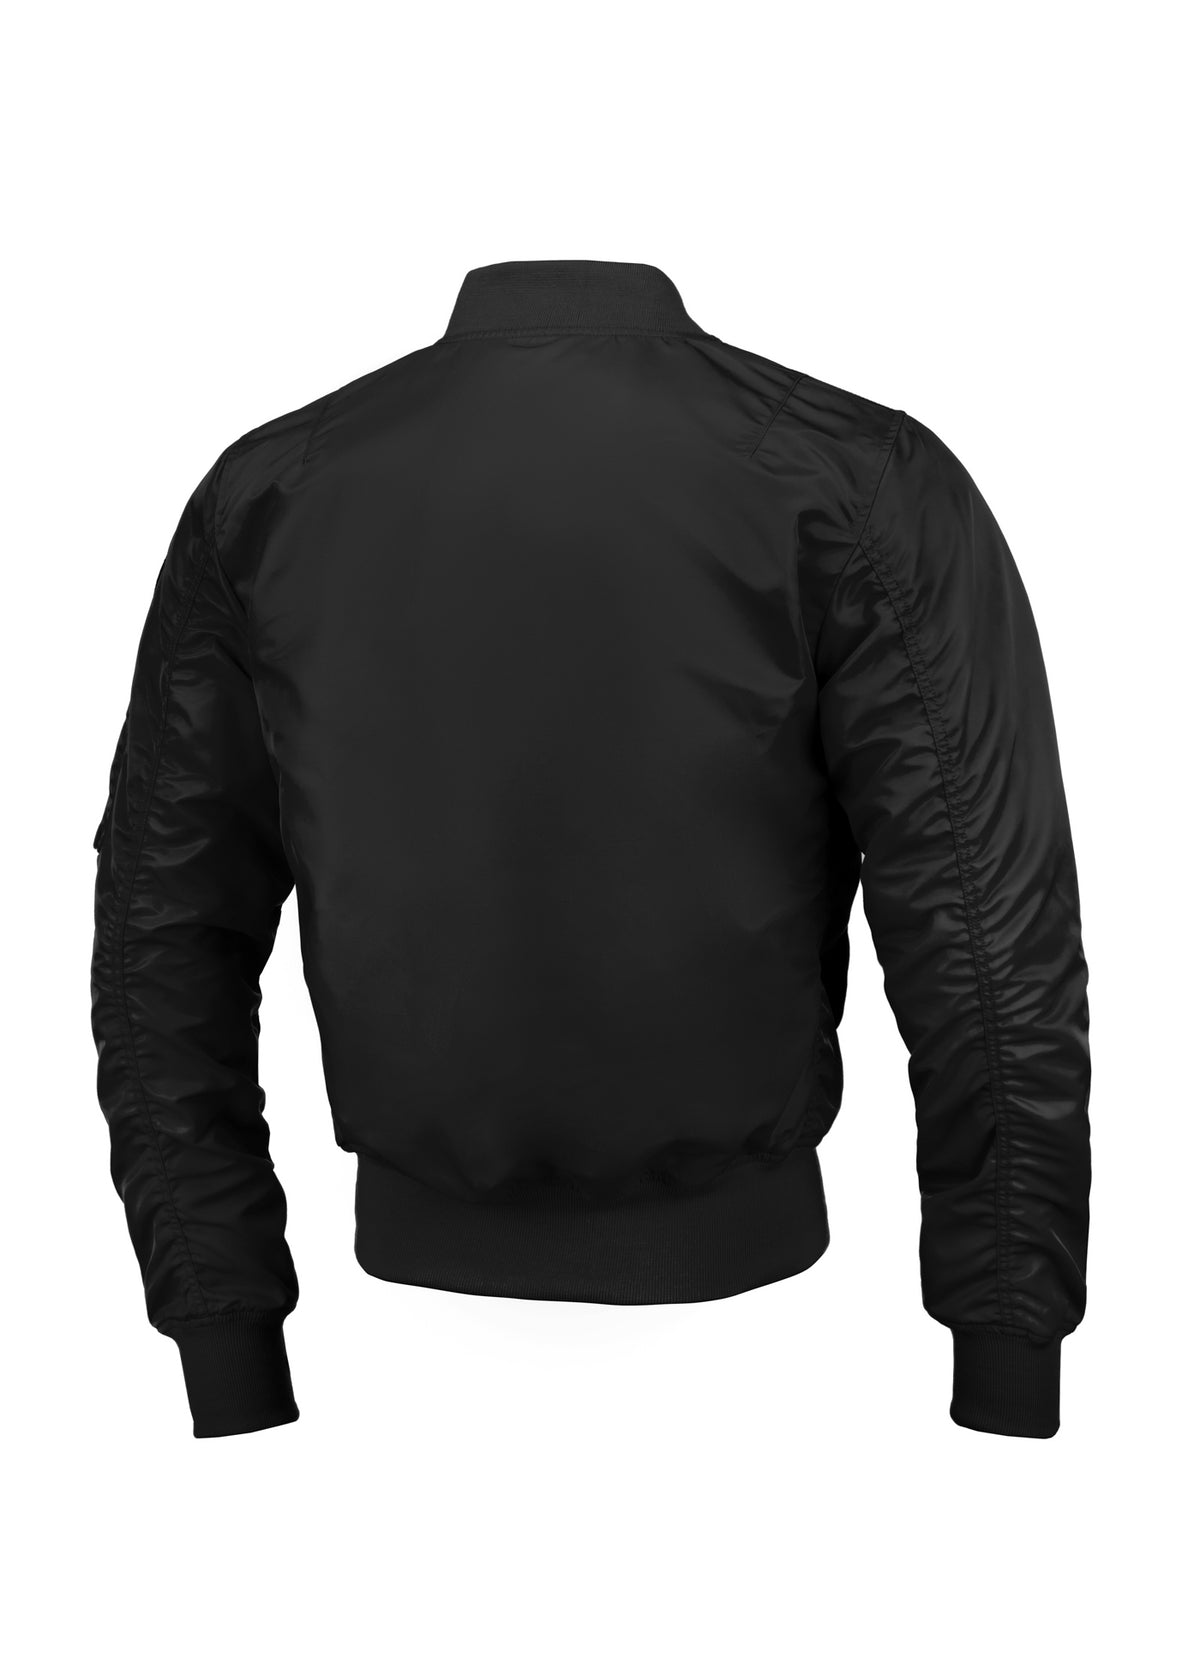 MA1 LOGO 2 Black Jacket